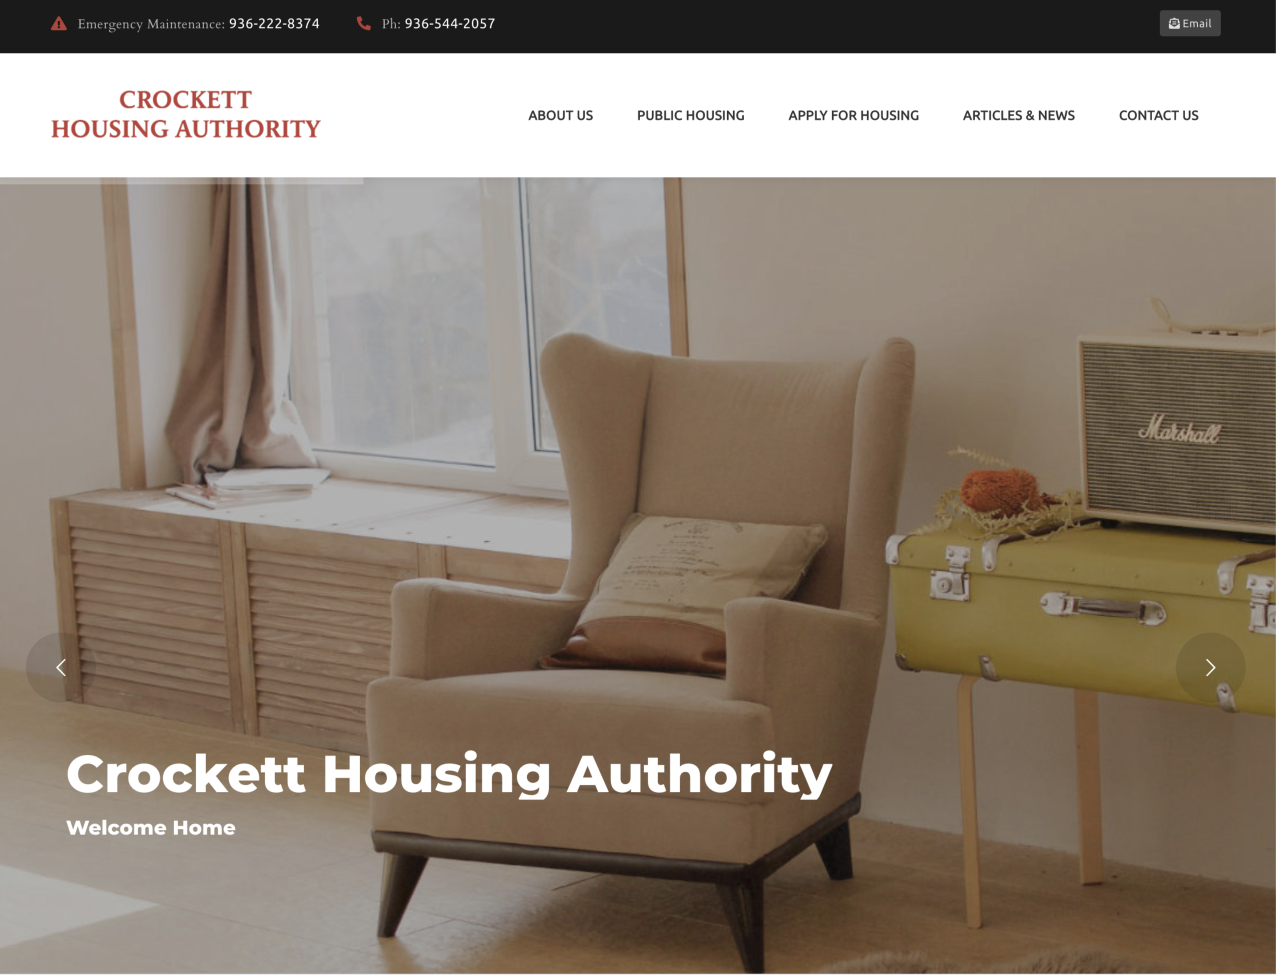 Crockett Housing Authority homepage